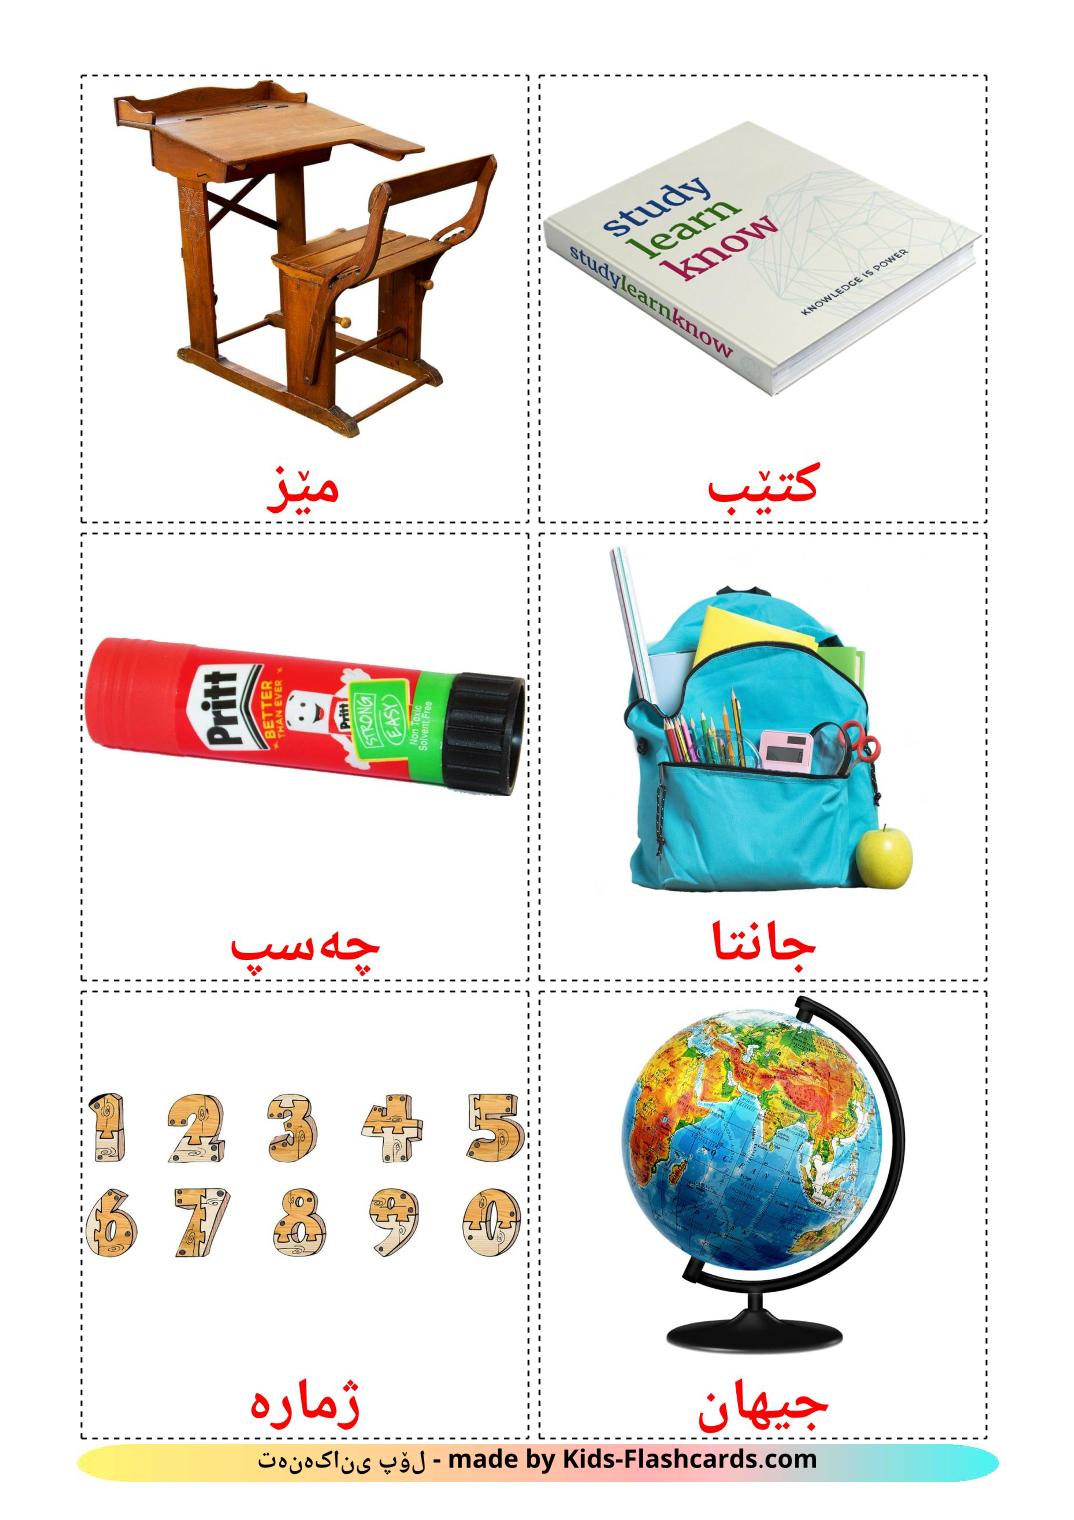 Objetos de sala de aula - 36 Flashcards curdo(sorani)es gratuitos para impressão